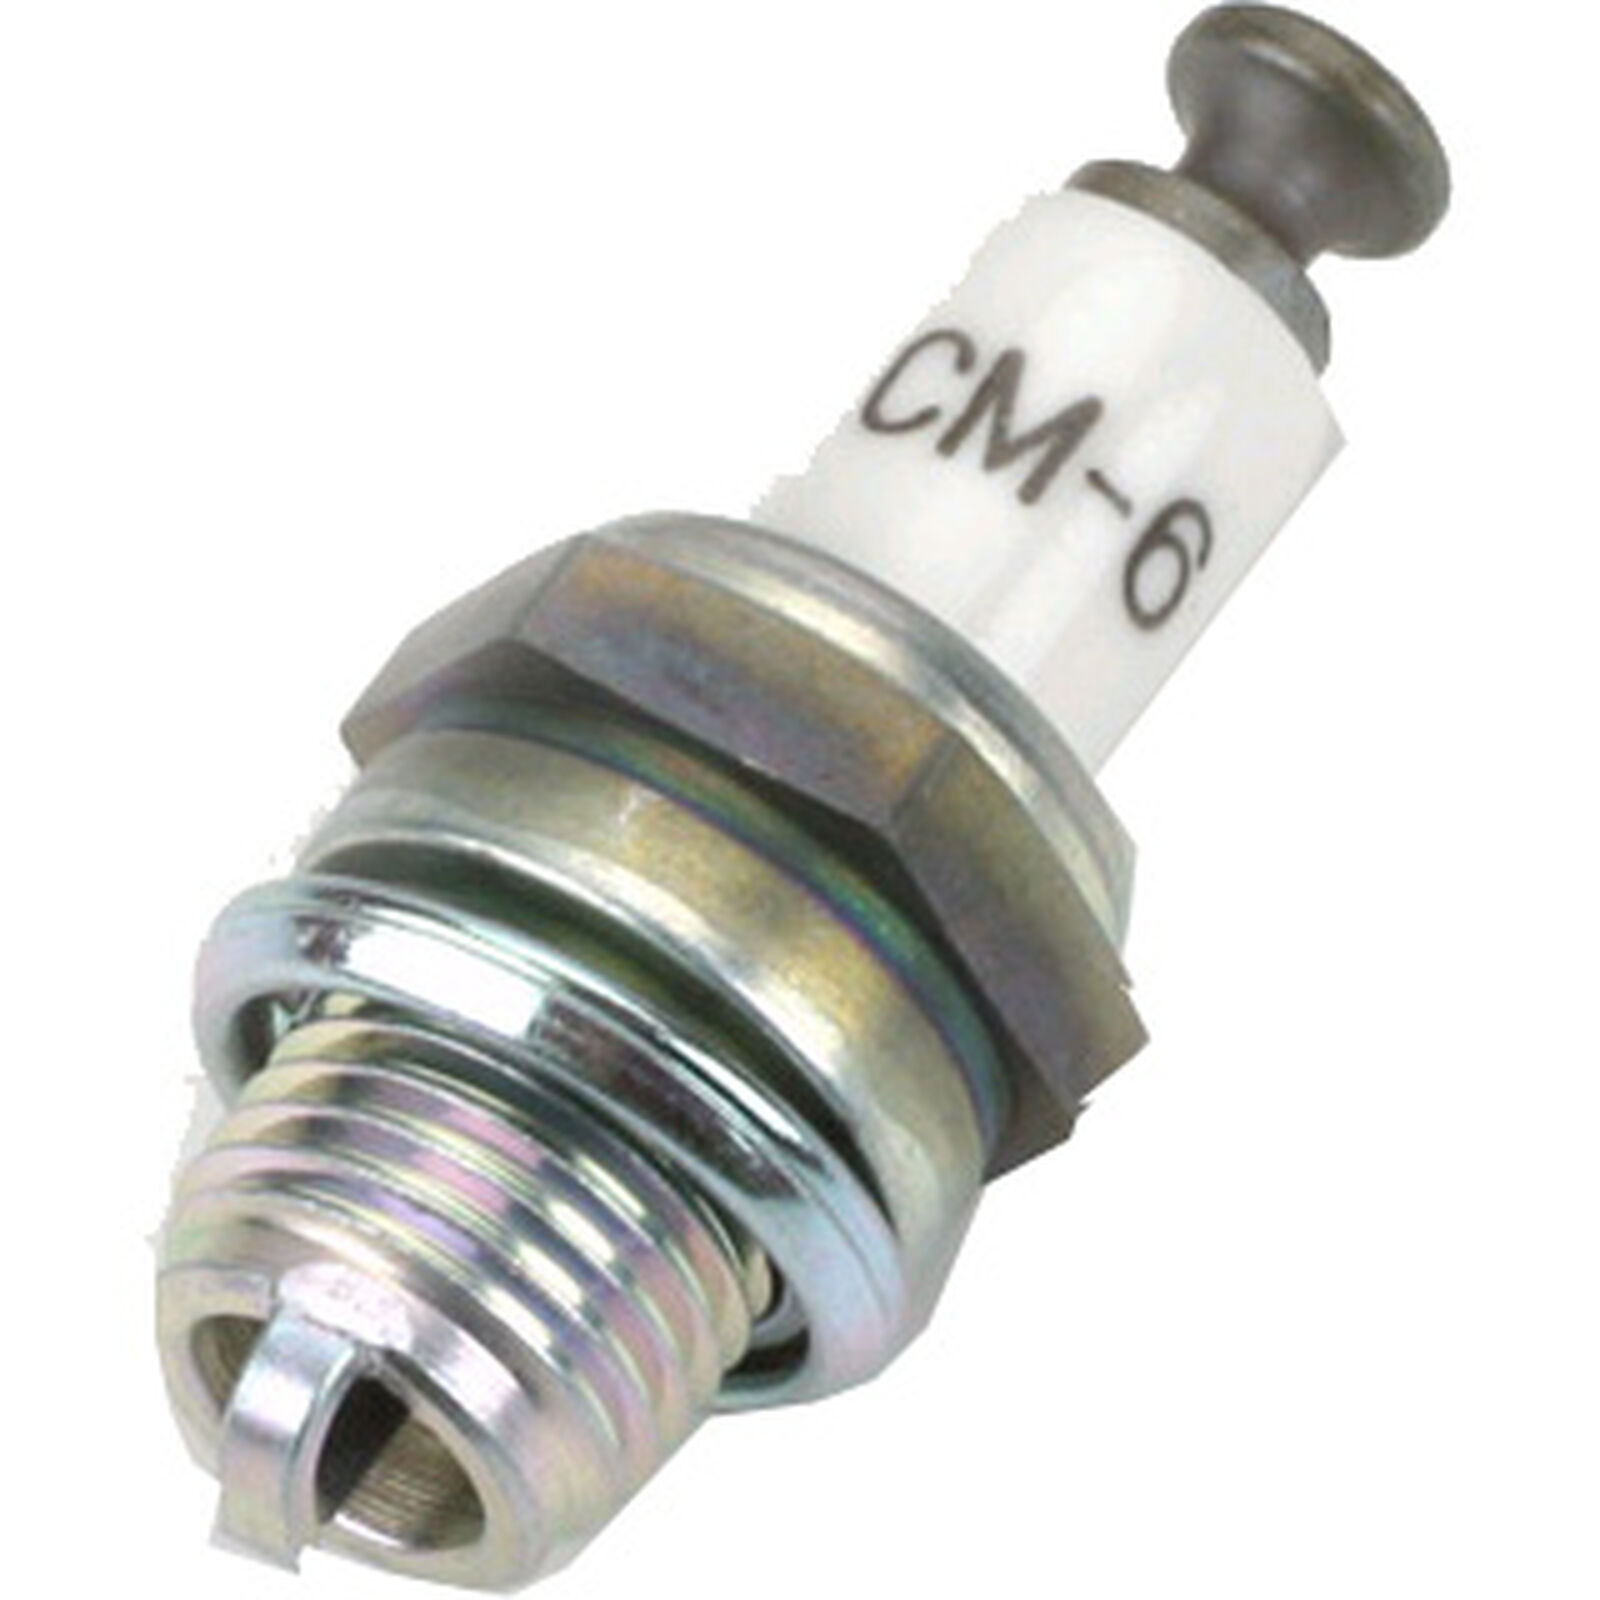 NGK CM-6 Spark Plug: AK, AT, BG, BO, BP, CC